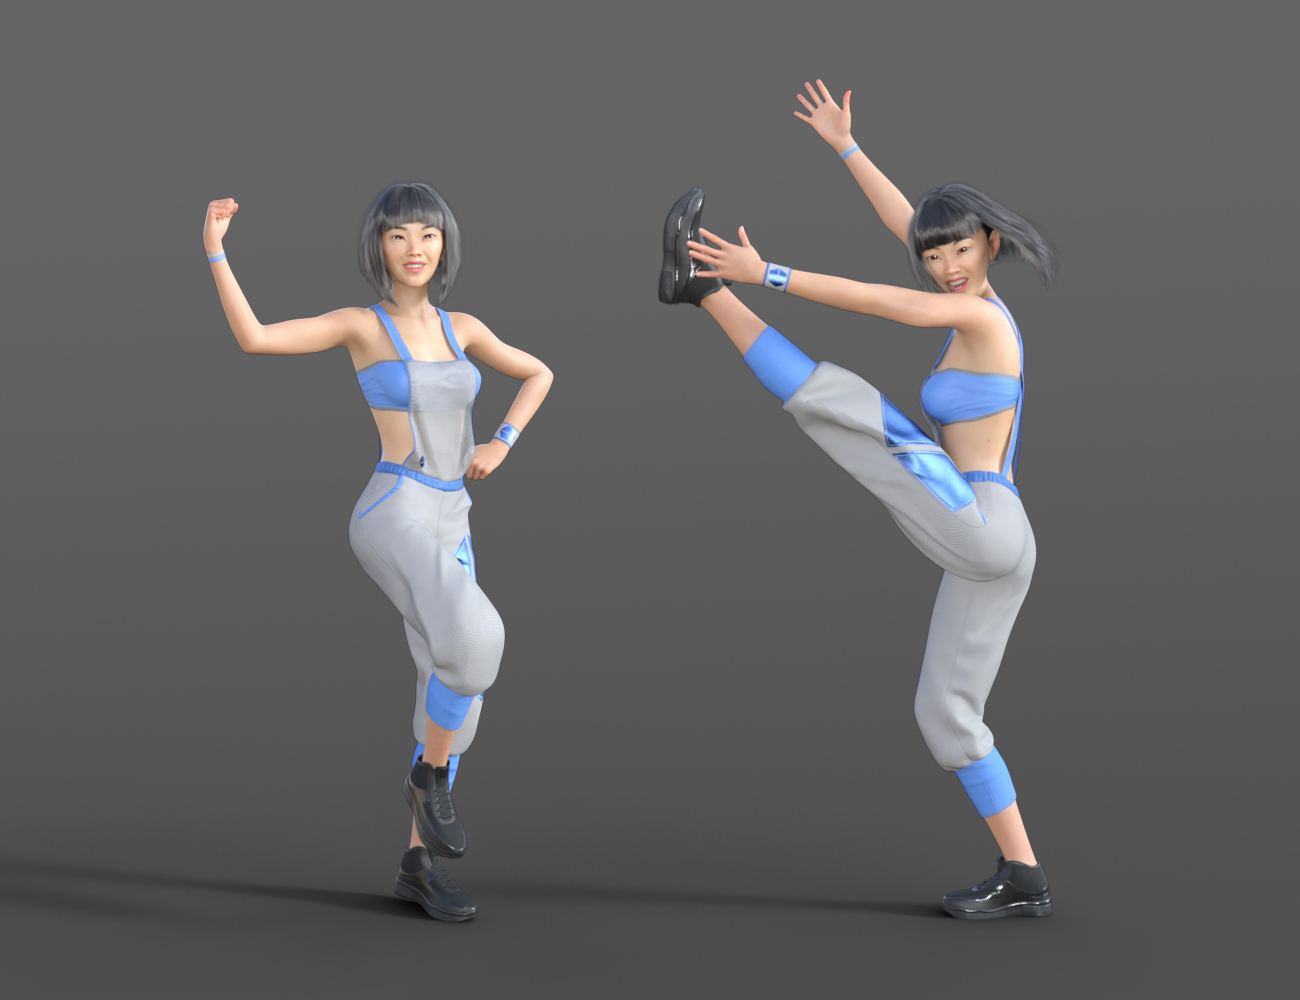 Dancing 2 Animations for Genesis 8 by: ThreeDigital, 3D Models by Daz 3D